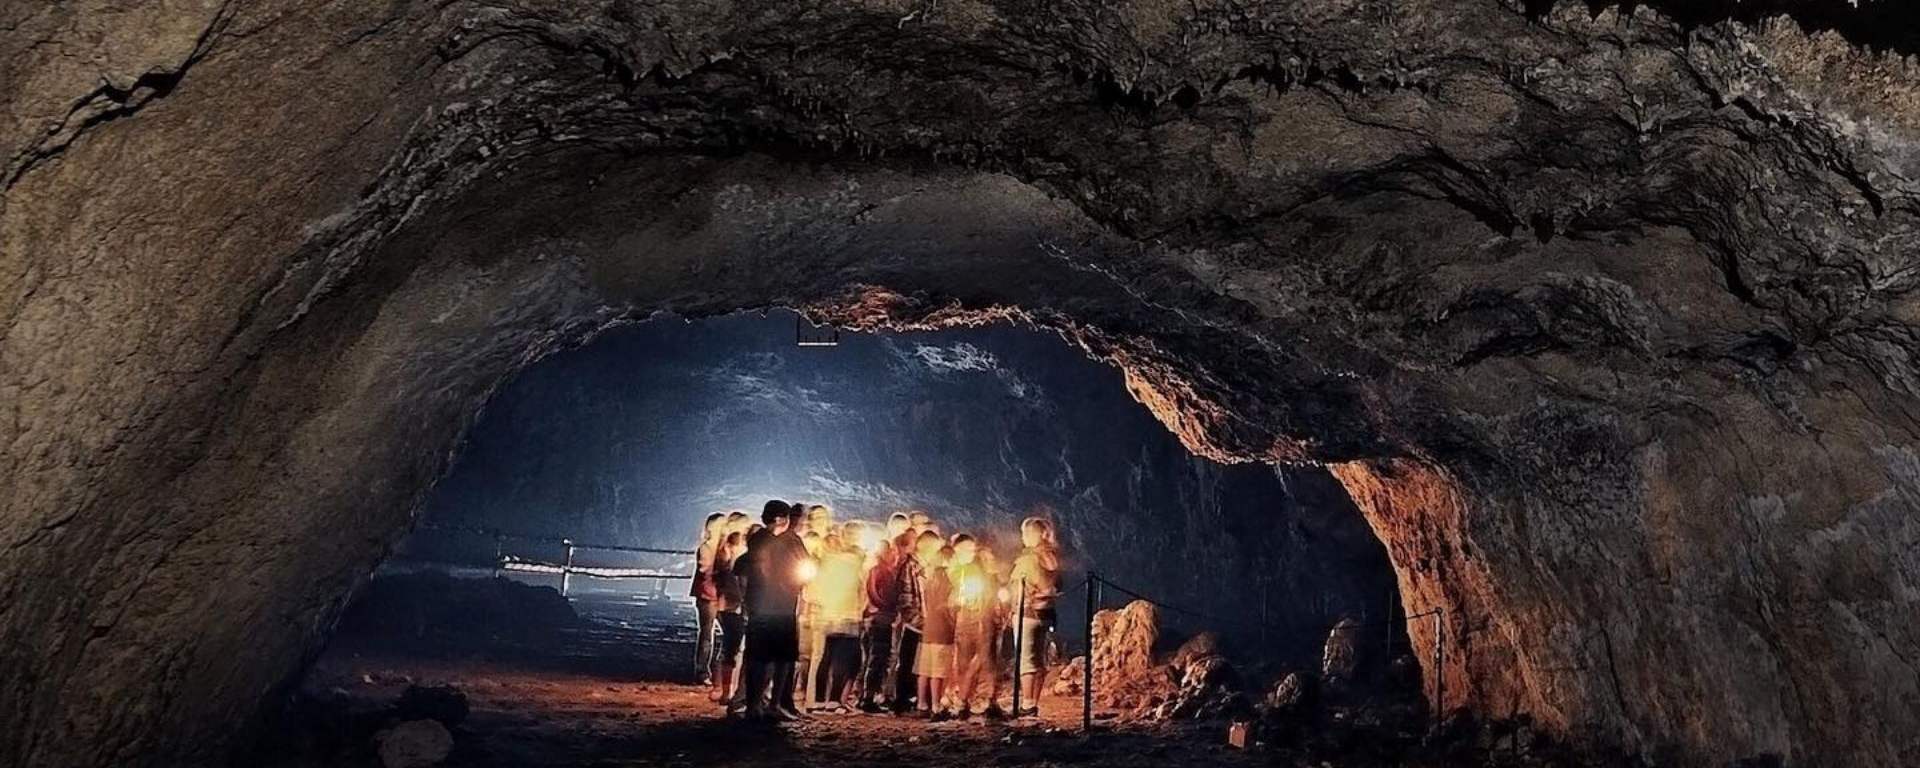 Jaskinia Ciemna w Ojcowskim Parku Narodowym